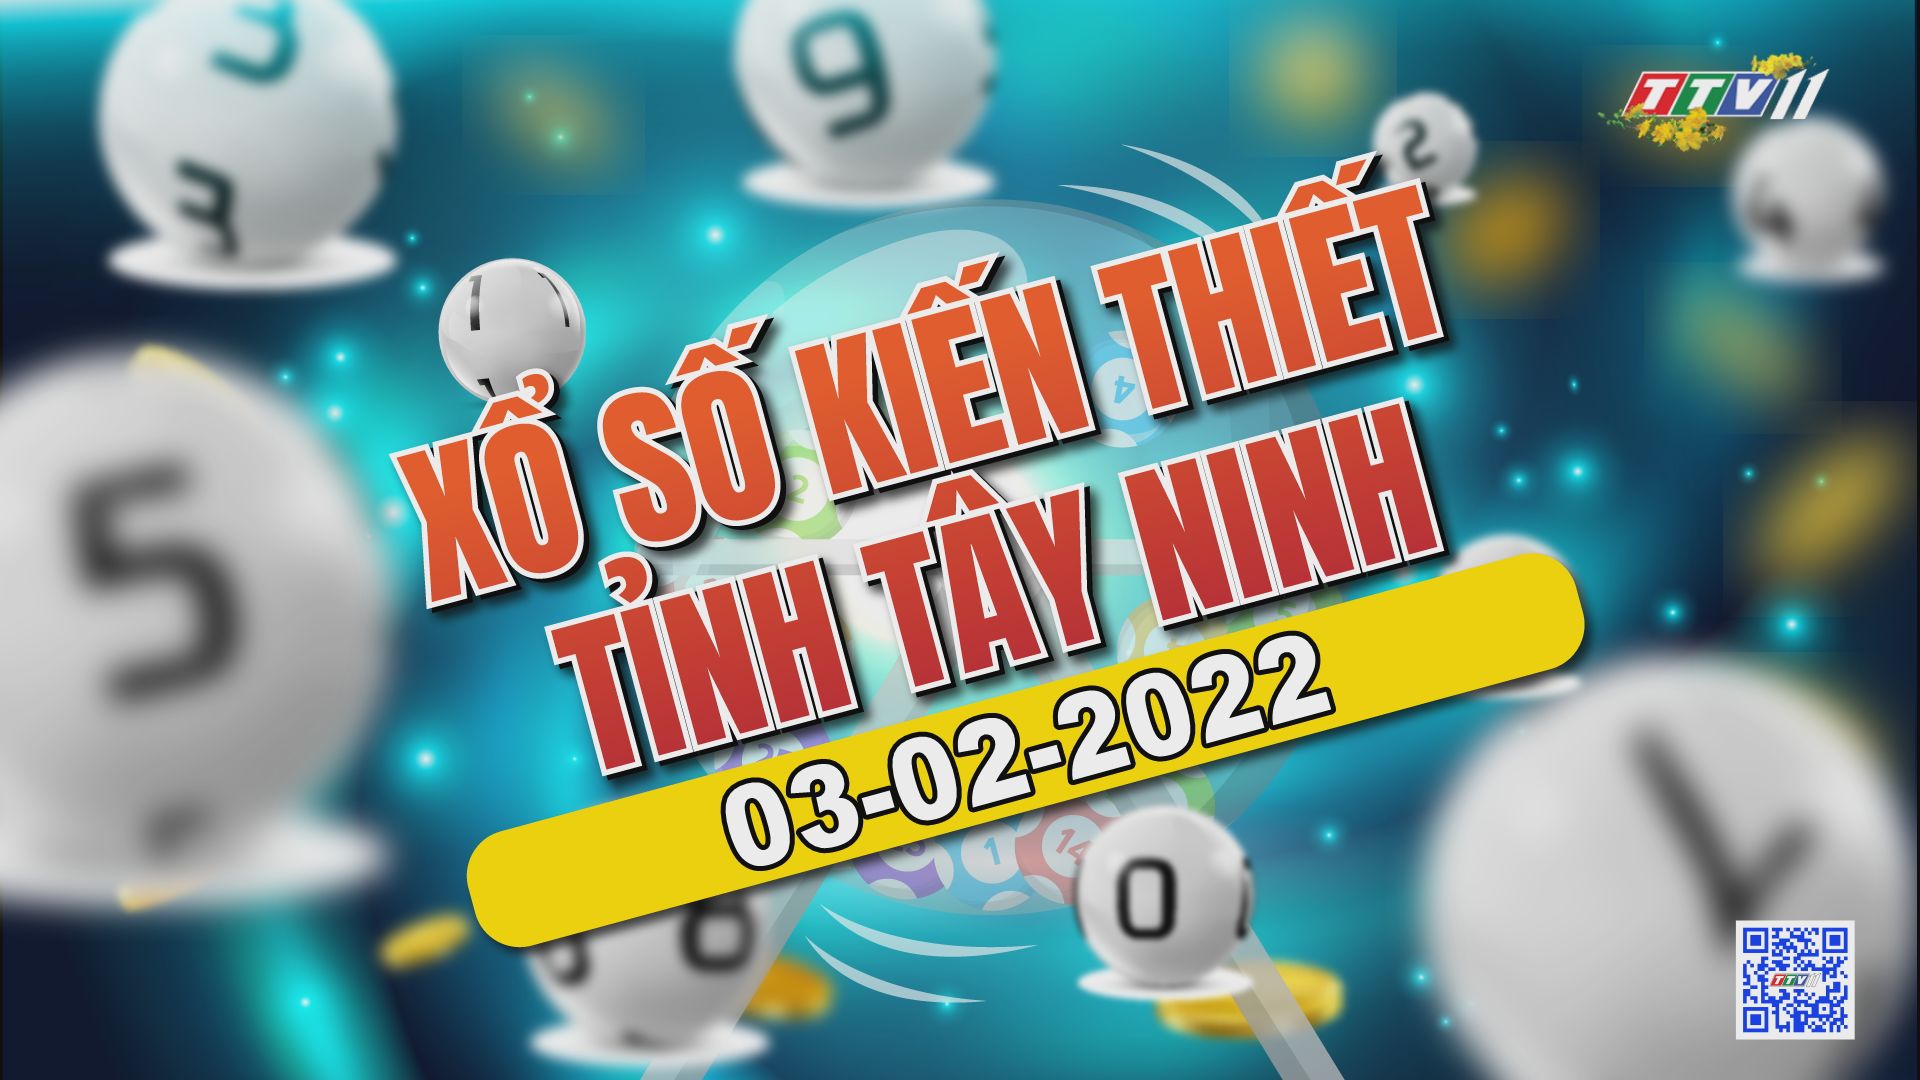 Trực tiếp Xổ số Tây Ninh ngày 03-02-2022 | TayNinhTVAudio